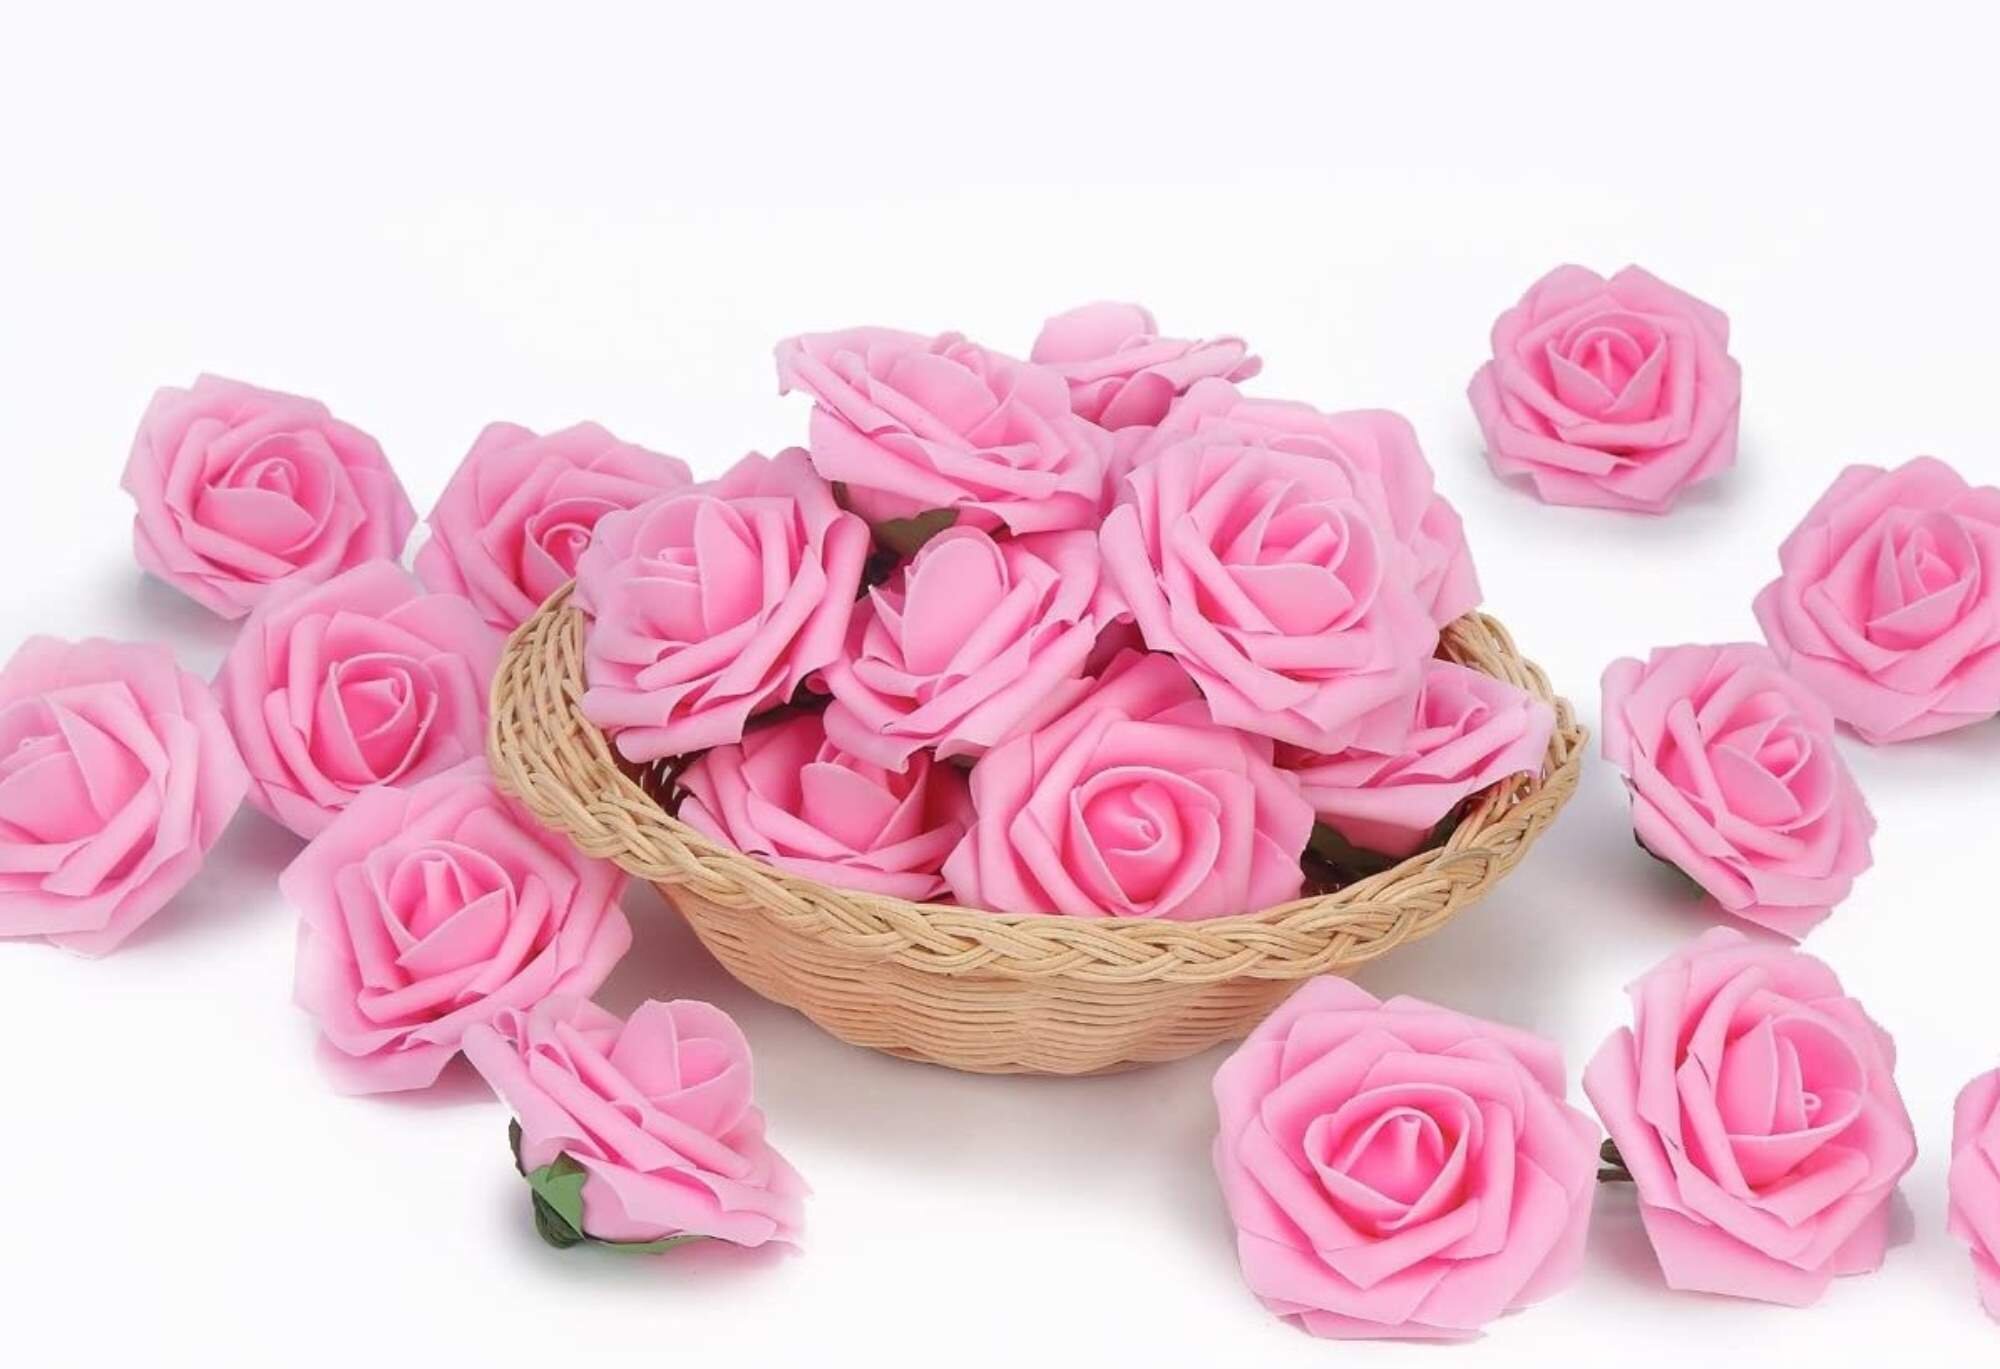 Artificial Rose Heads Silk Flower Bouquet Wedding Home Office Decor Floral Lot 